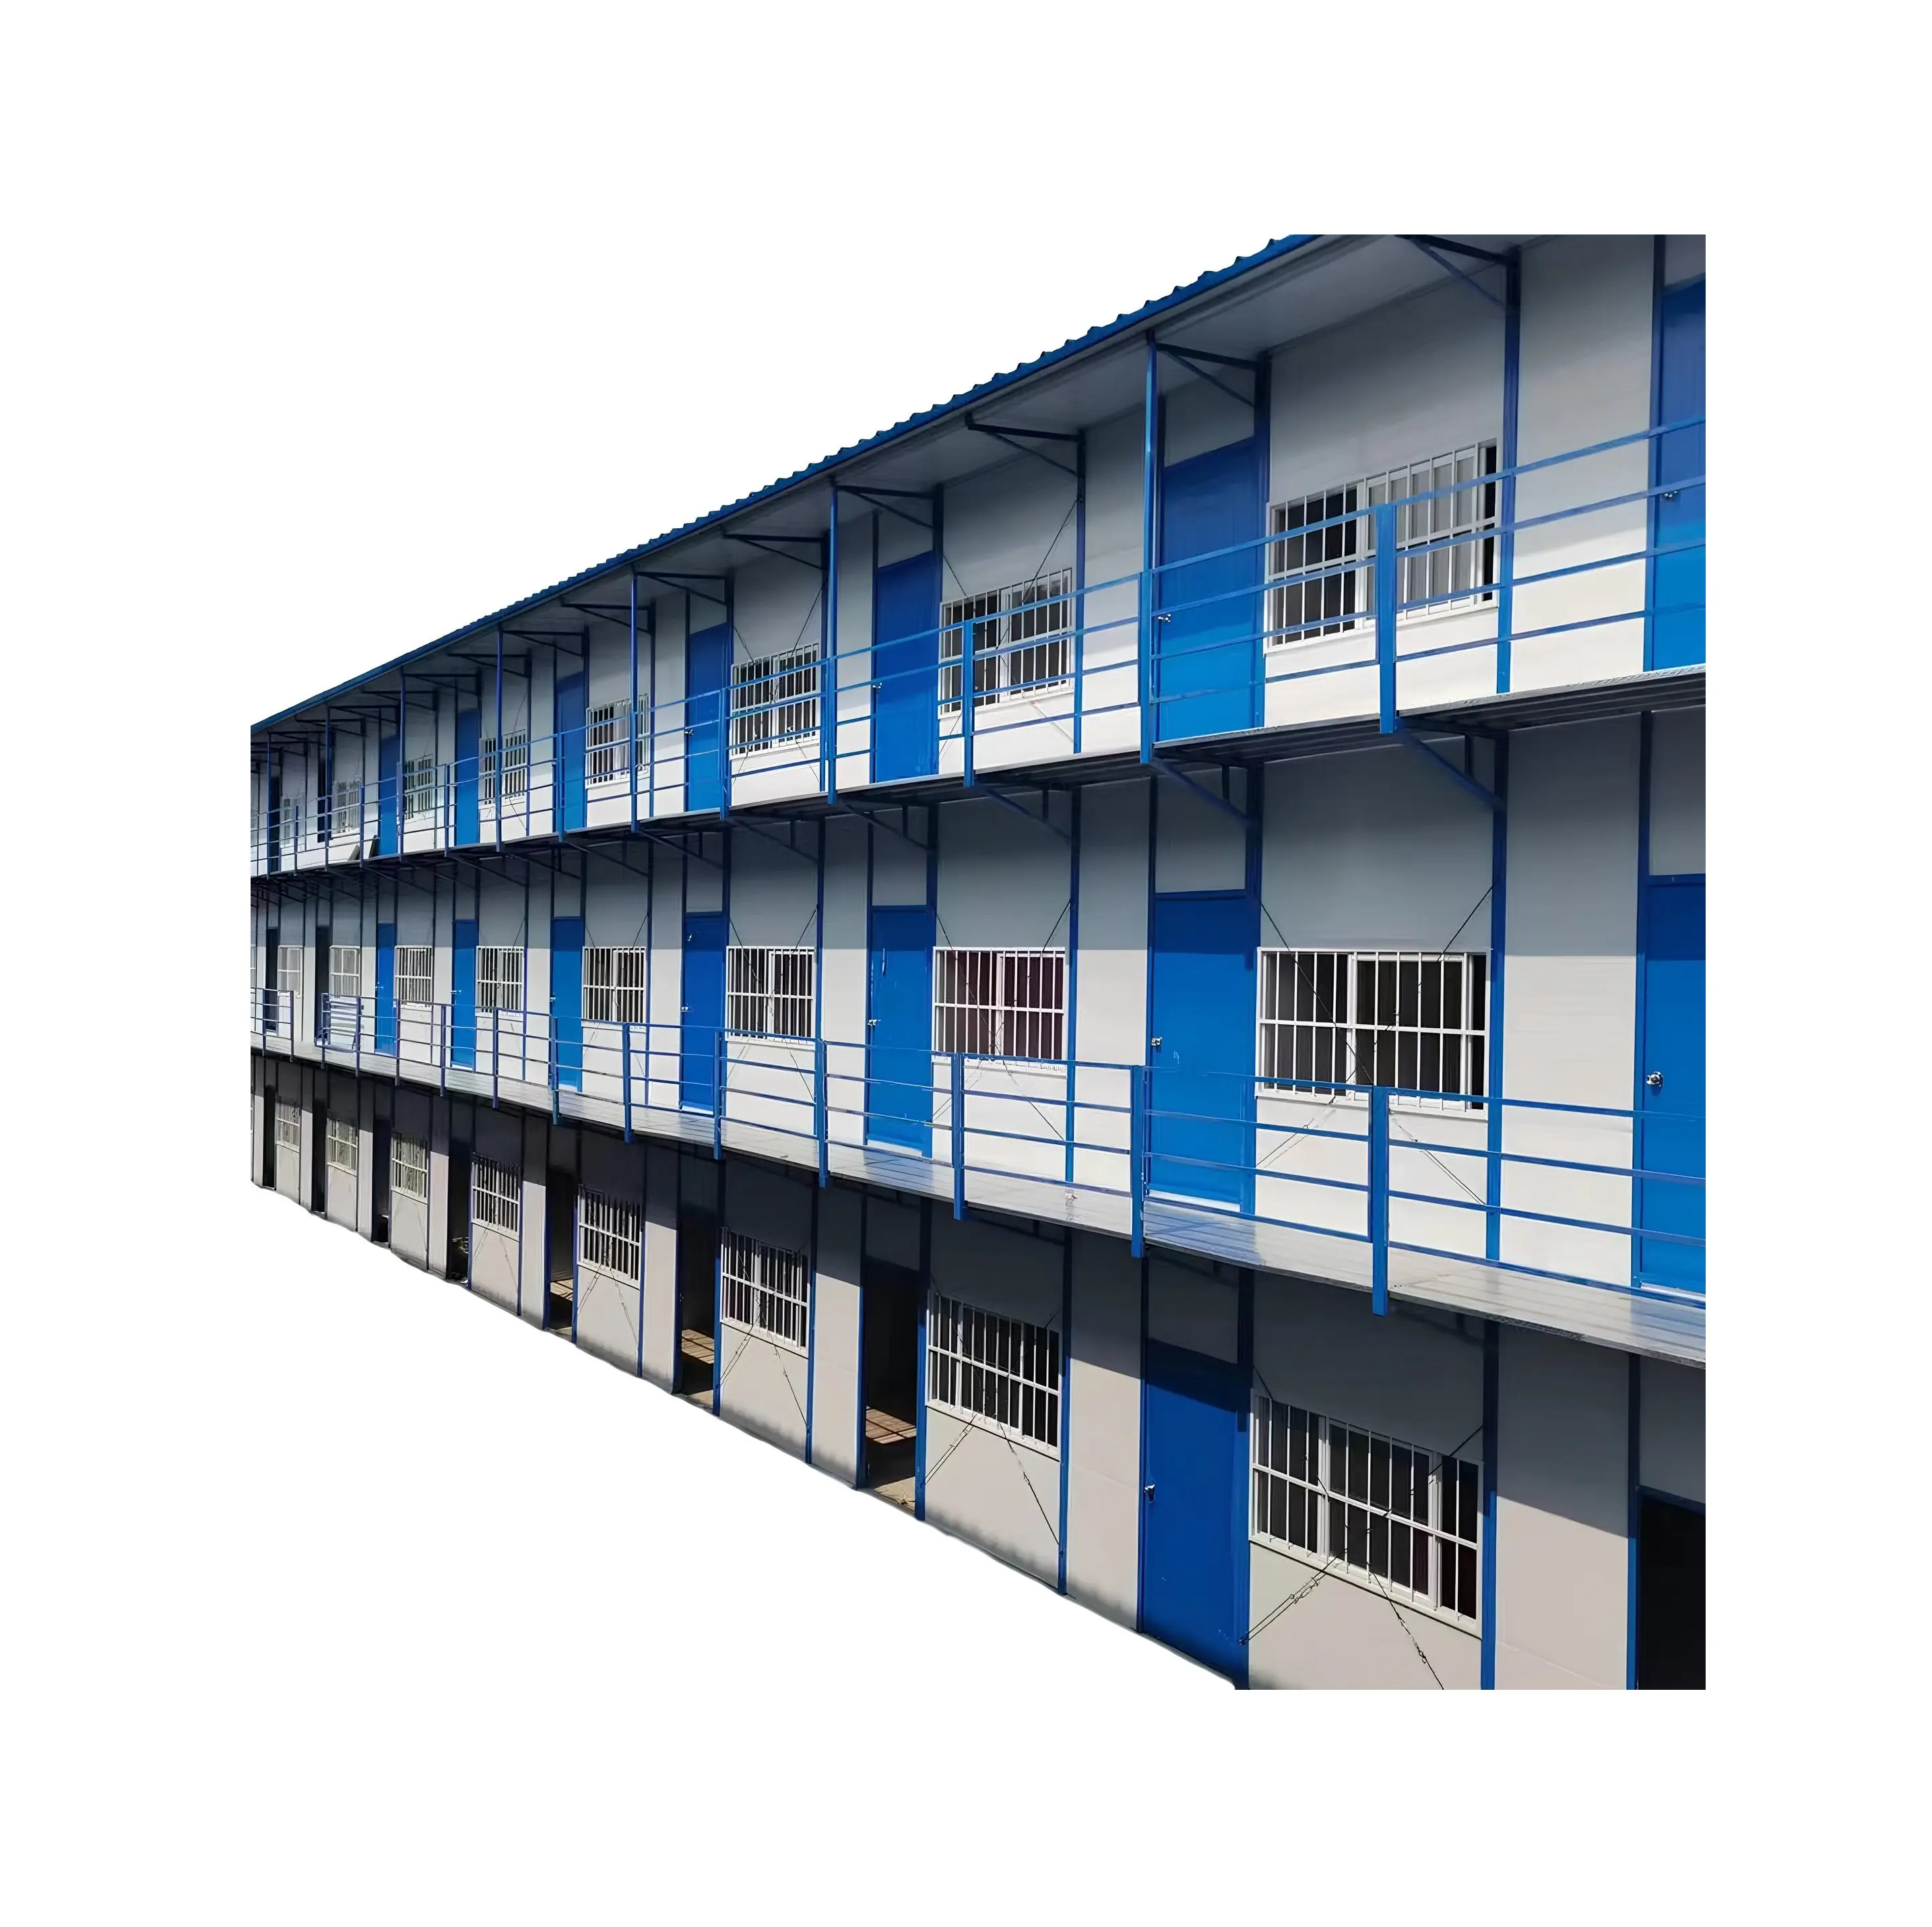 3 층 분리형 주택 조립식 주택 저렴한 확장 가능한 노동 기숙사 현장 사무실 중국 조립식 주택 판매 준비 완료